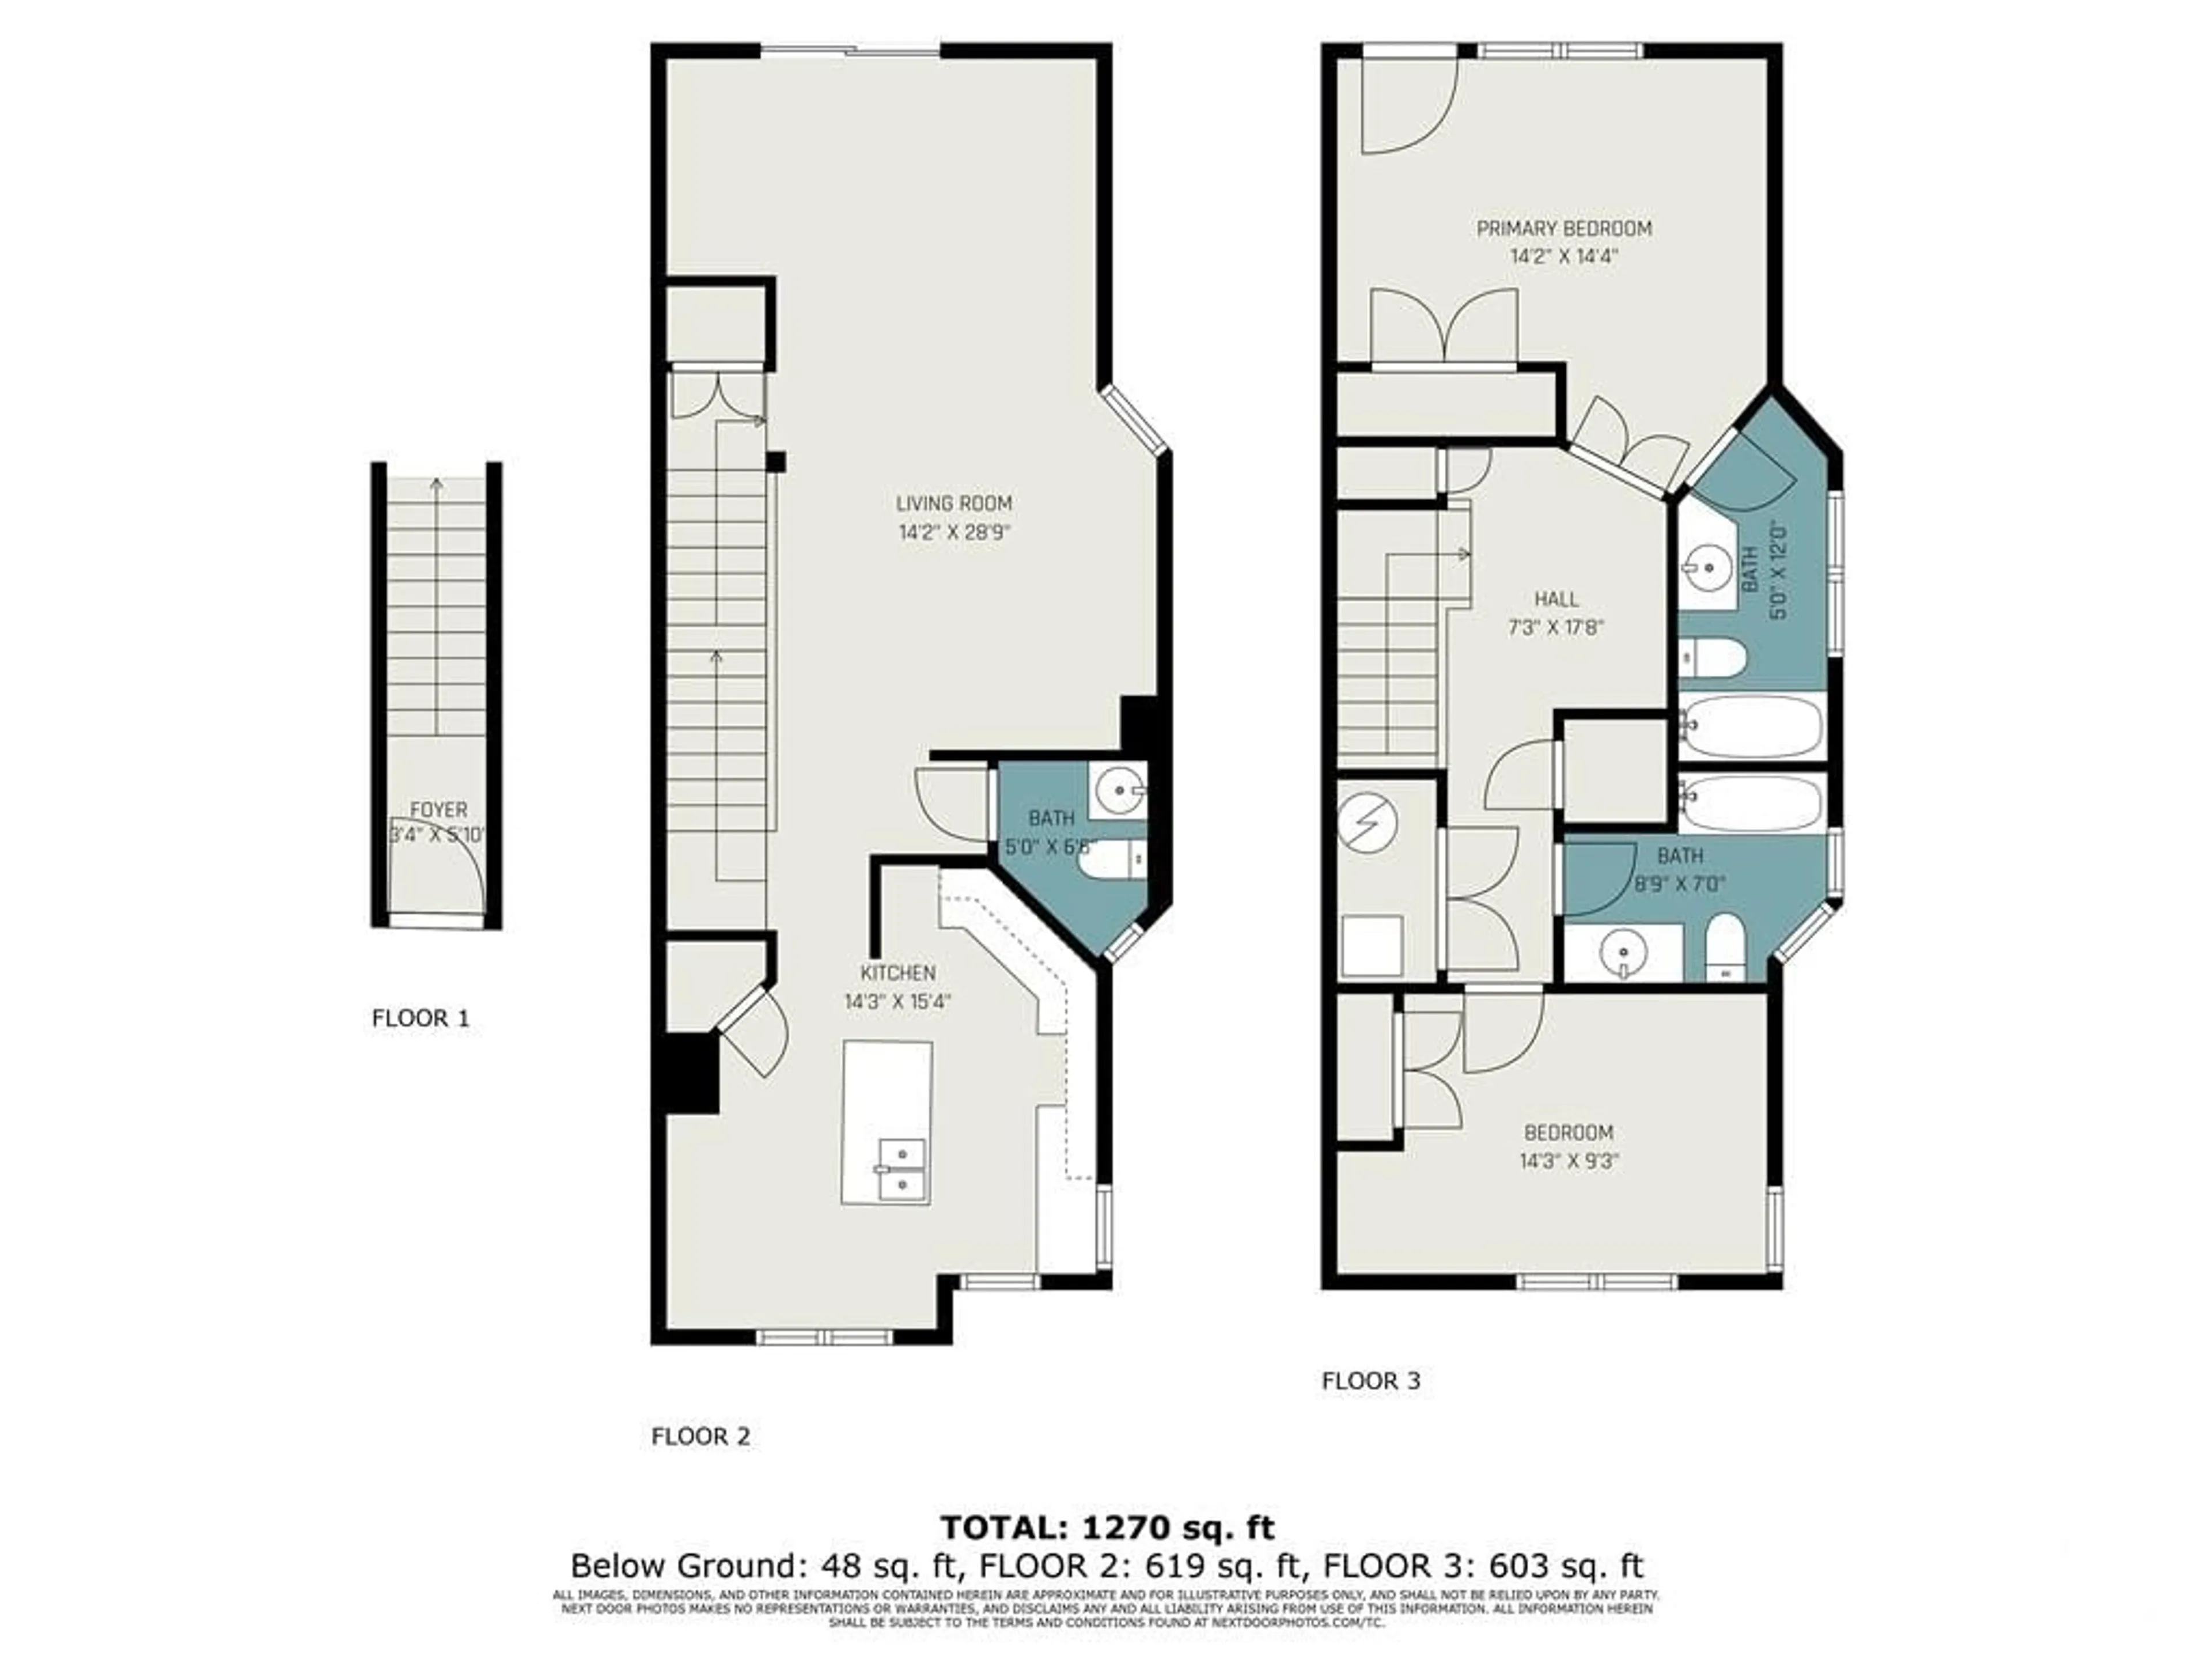 Floor plan for 261 FIR Lane, Kemptville Ontario K0G 1J0